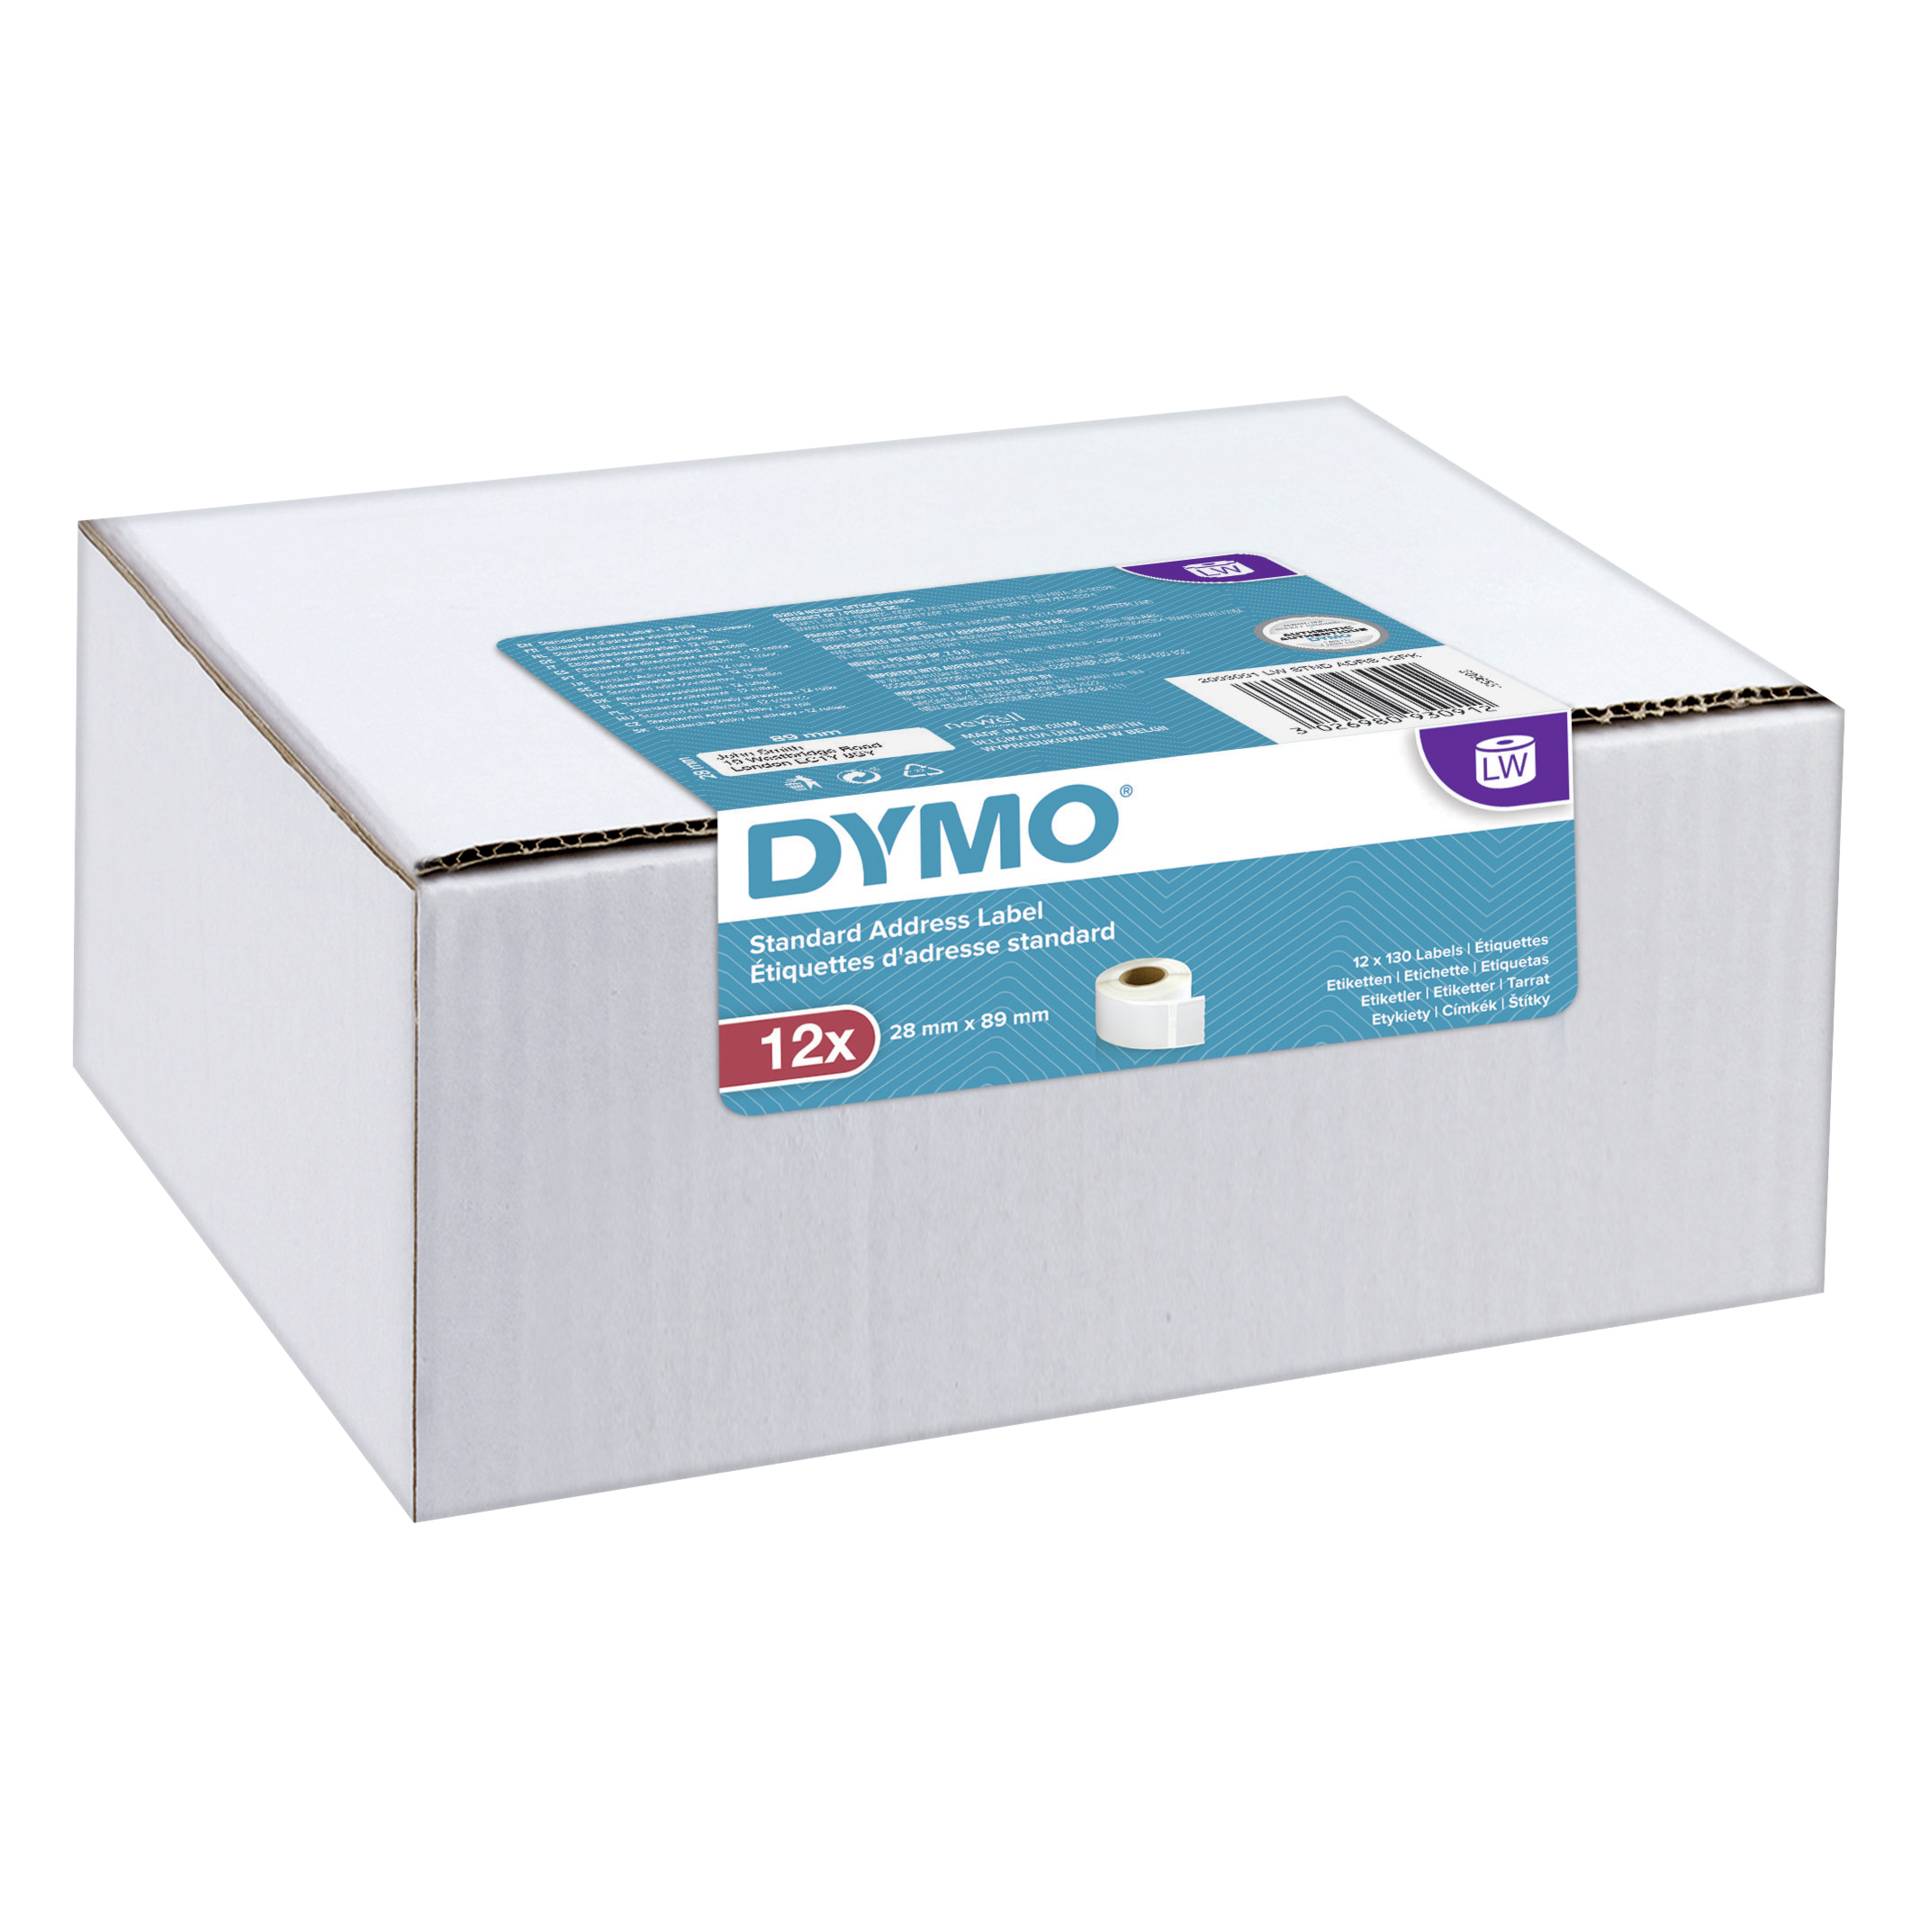 Dymo etichette indirizzo 28 x 89 mm bianco 12x 130 pz.